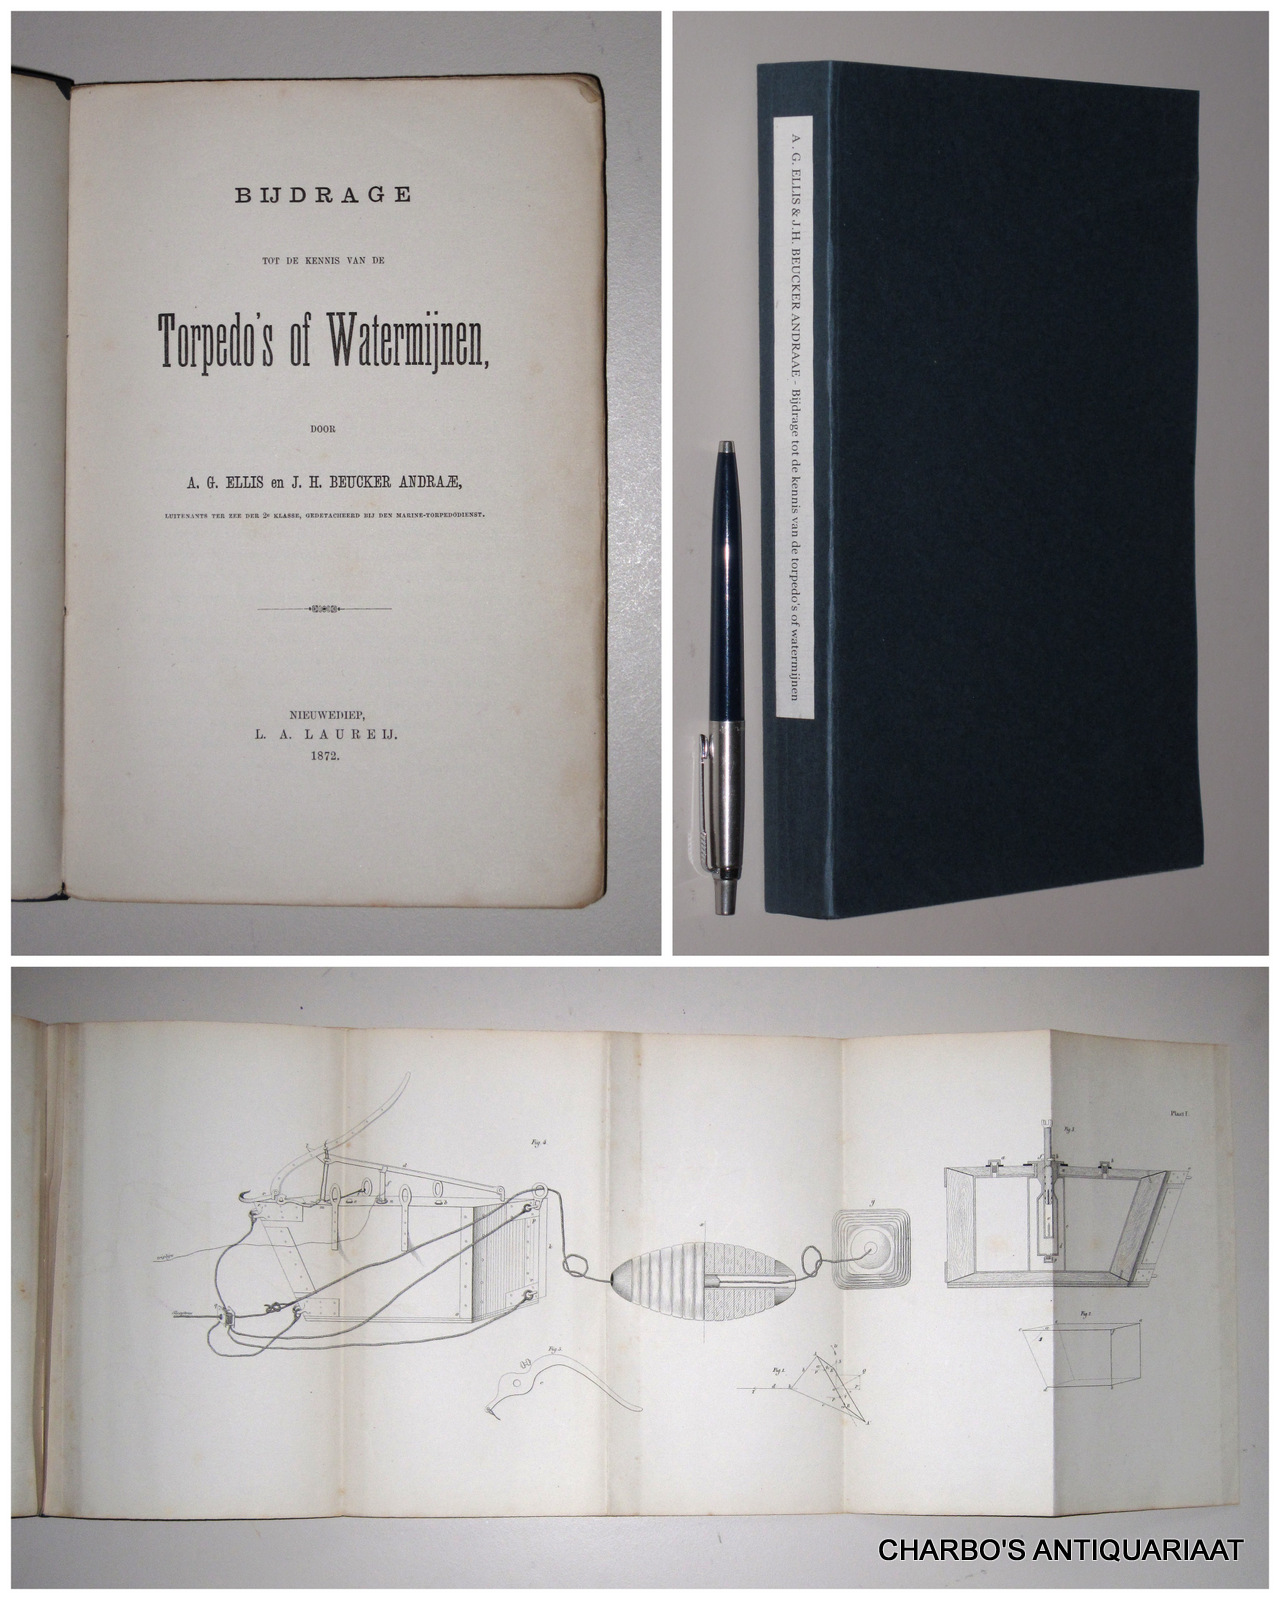 ELLIS, A.G. & BEUCKER ANDRAAE, J.H., -  Bijdrage tot de kennis van de torpedo's of watermijnen.